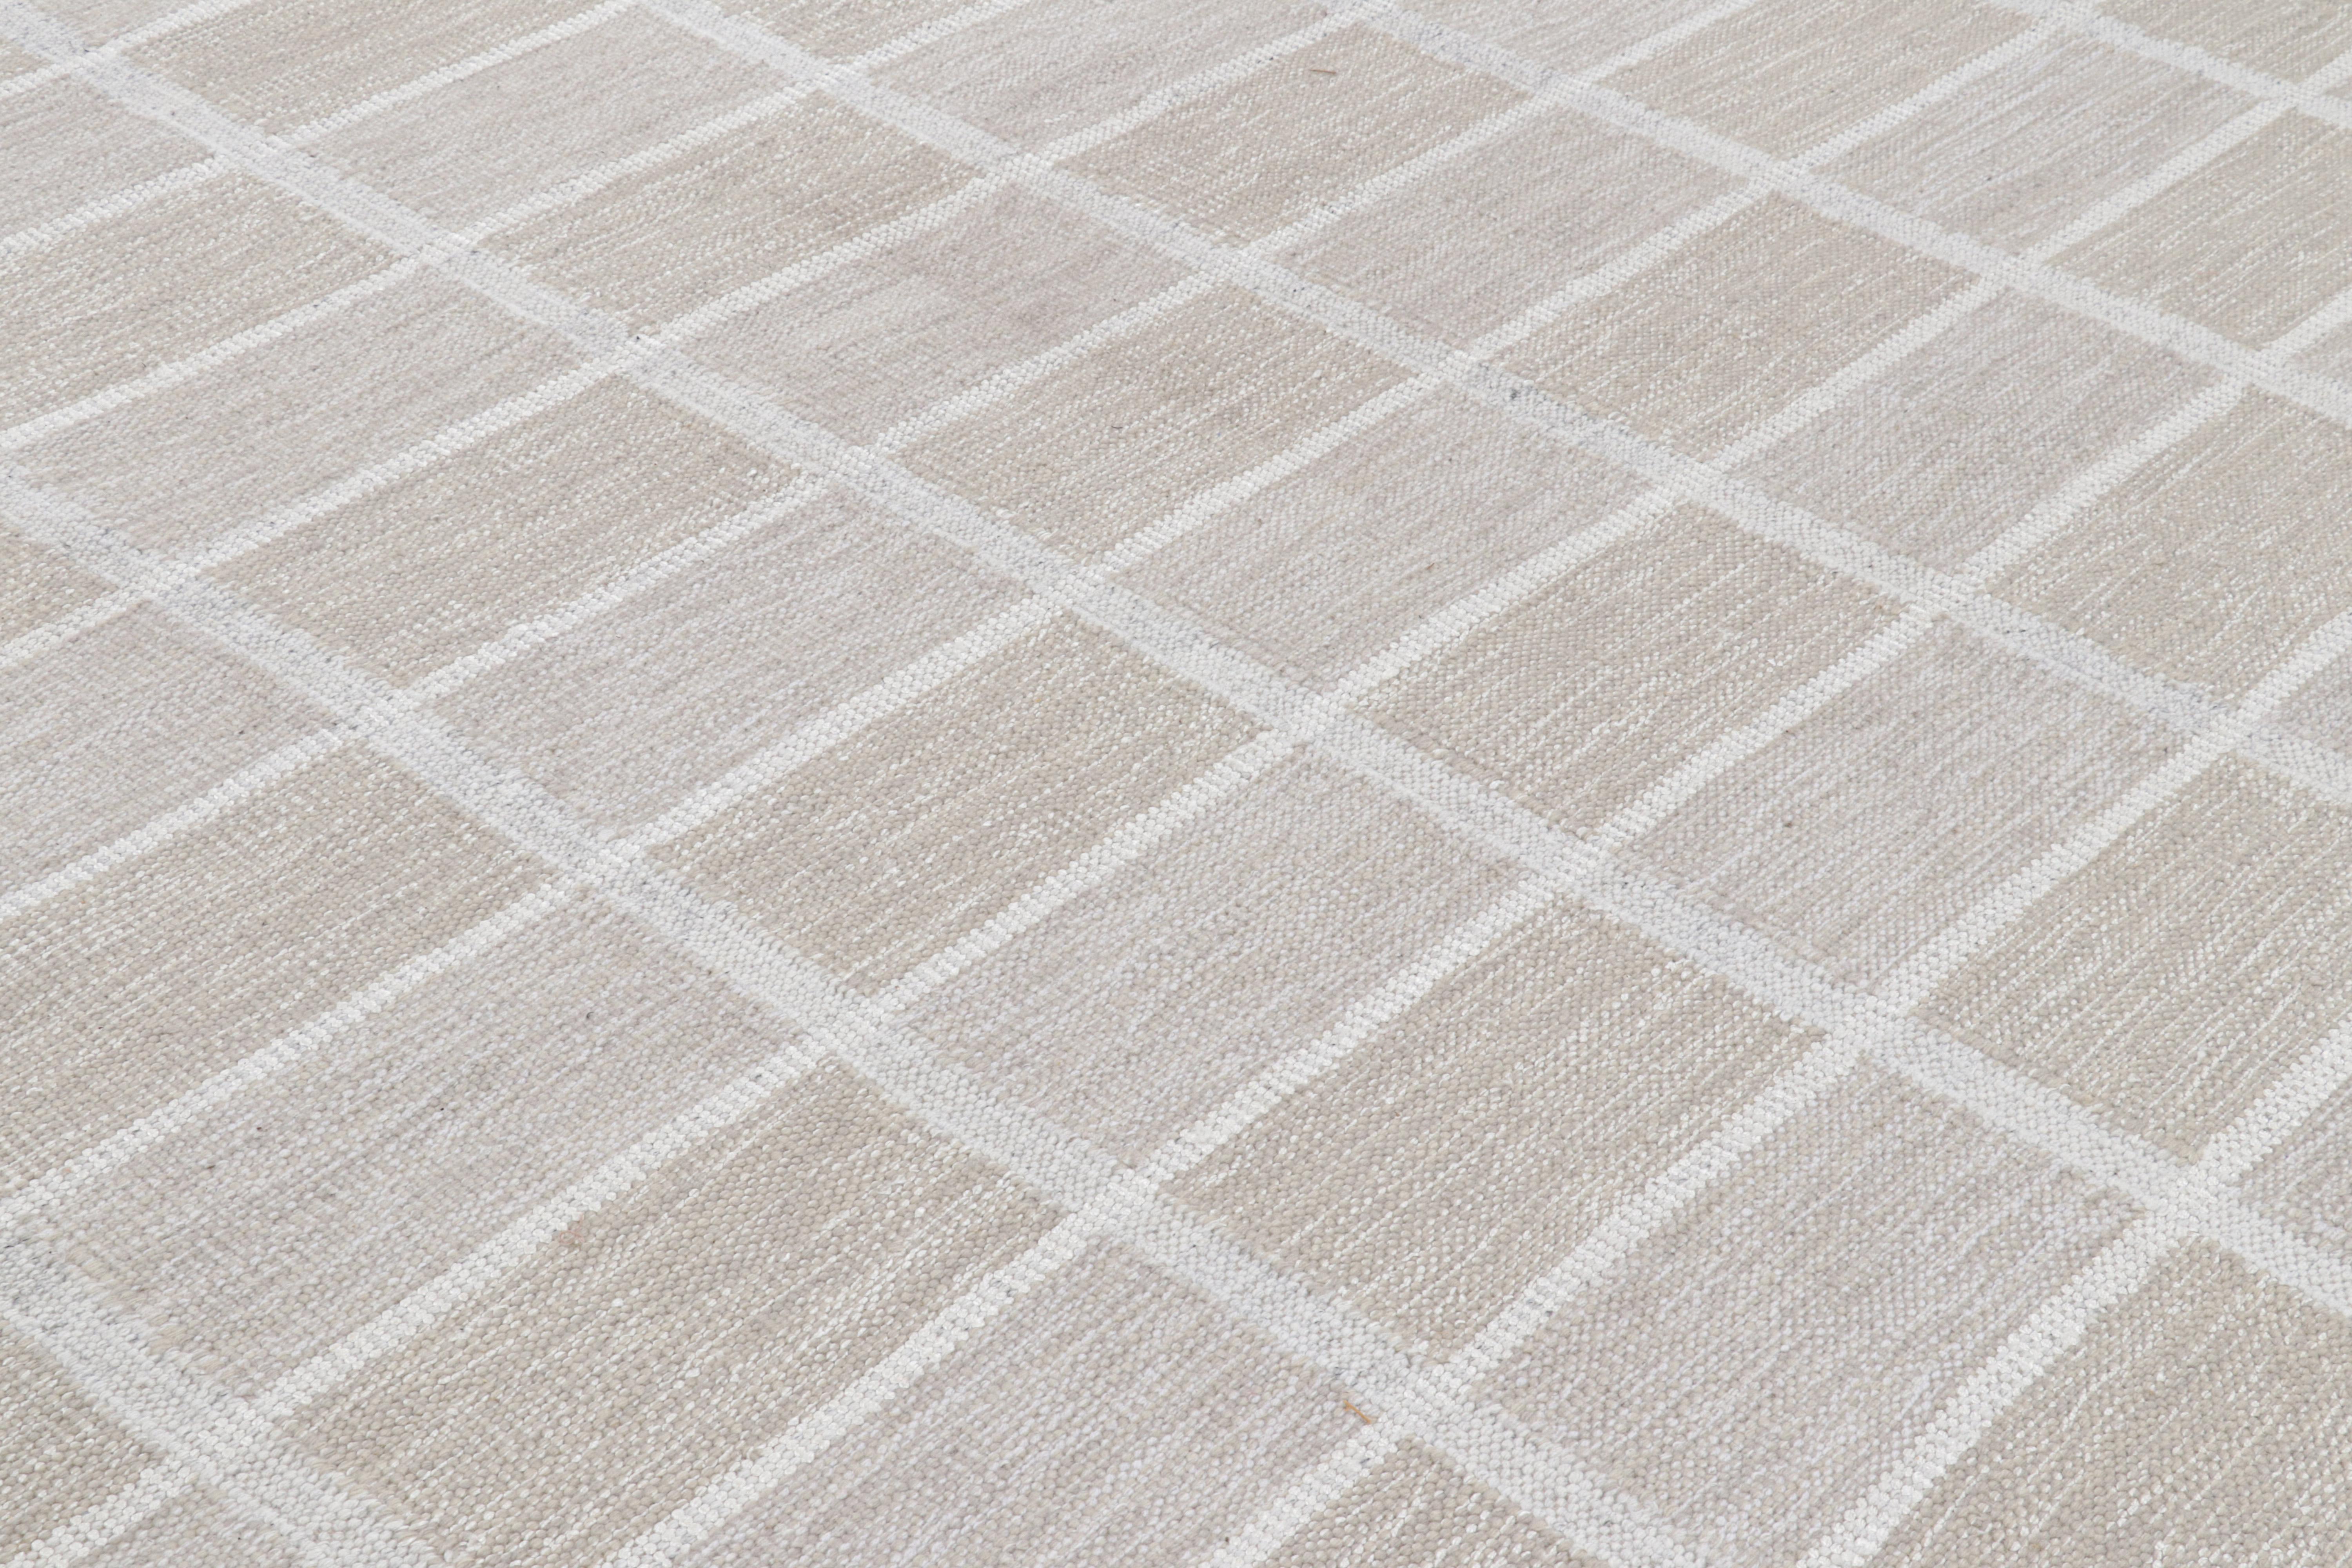 Ce tapis 8x9 est une nouveauté audacieuse de la Collection S &New de Rug & Kilim. Tissé à la main dans un tissage plat en laine avec également des fils naturels non teints, son design s'inspire des modèles minimalistes suédois.

Sur le Design :